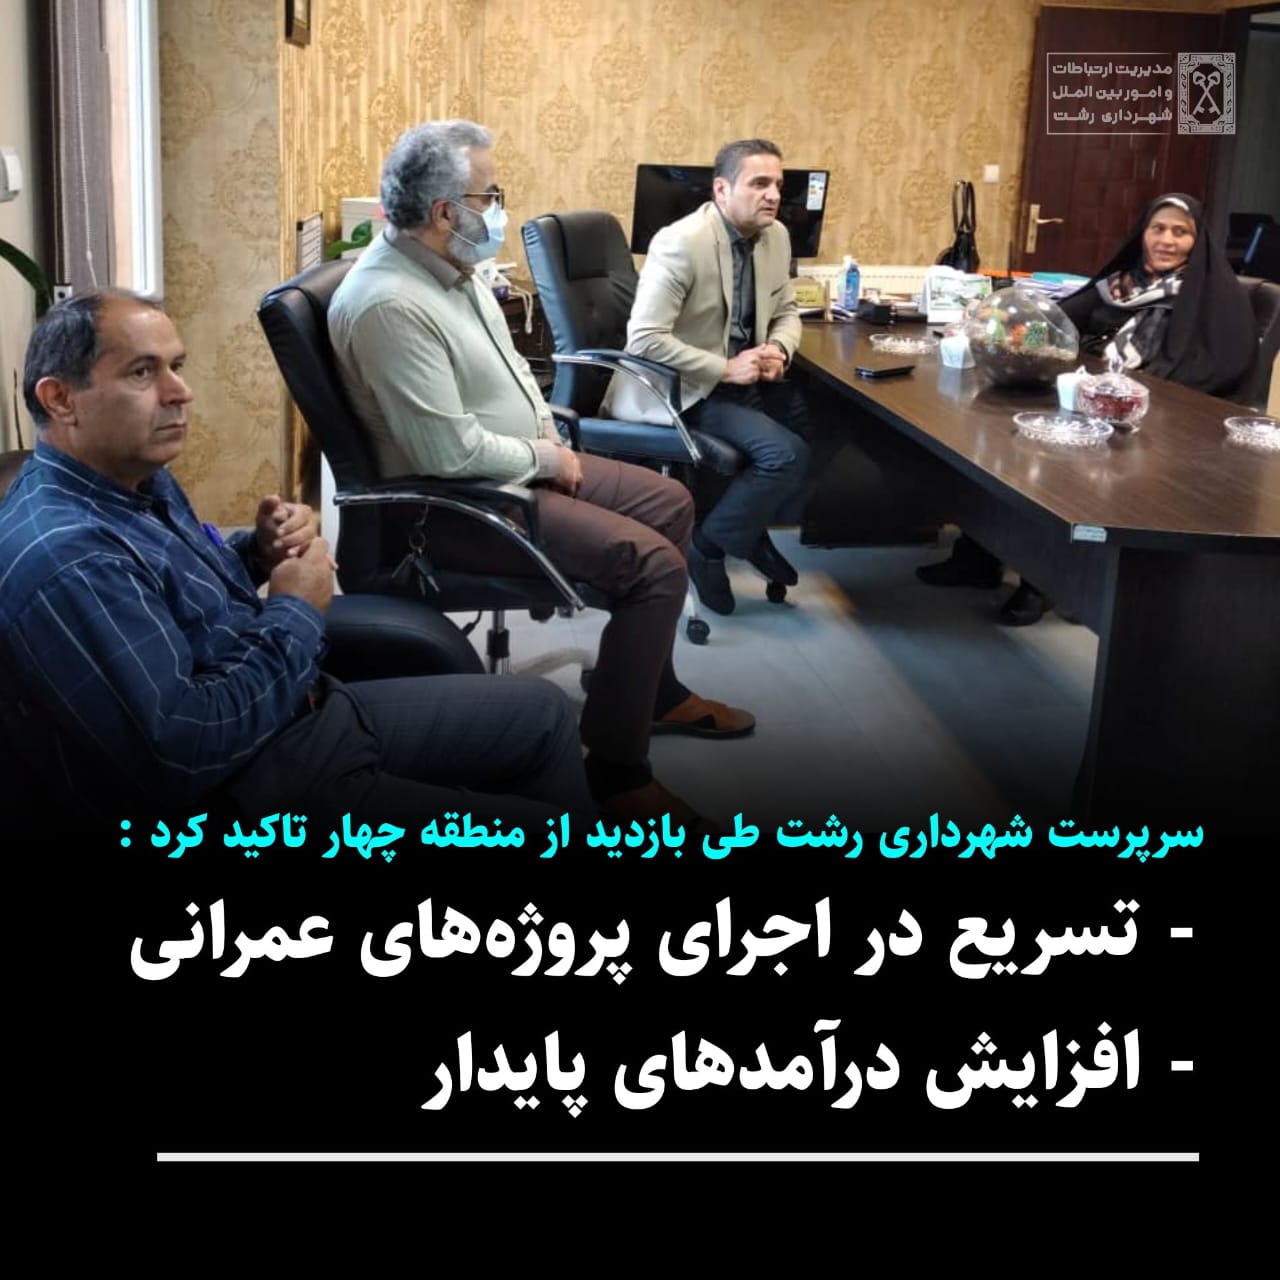 سرپرست شهرداری رشت طی بازدیداز منطقه چهارتاکید کرد:تسریع دراجرای پروژه های عمرانی، افزایش درآمدهای پایدار